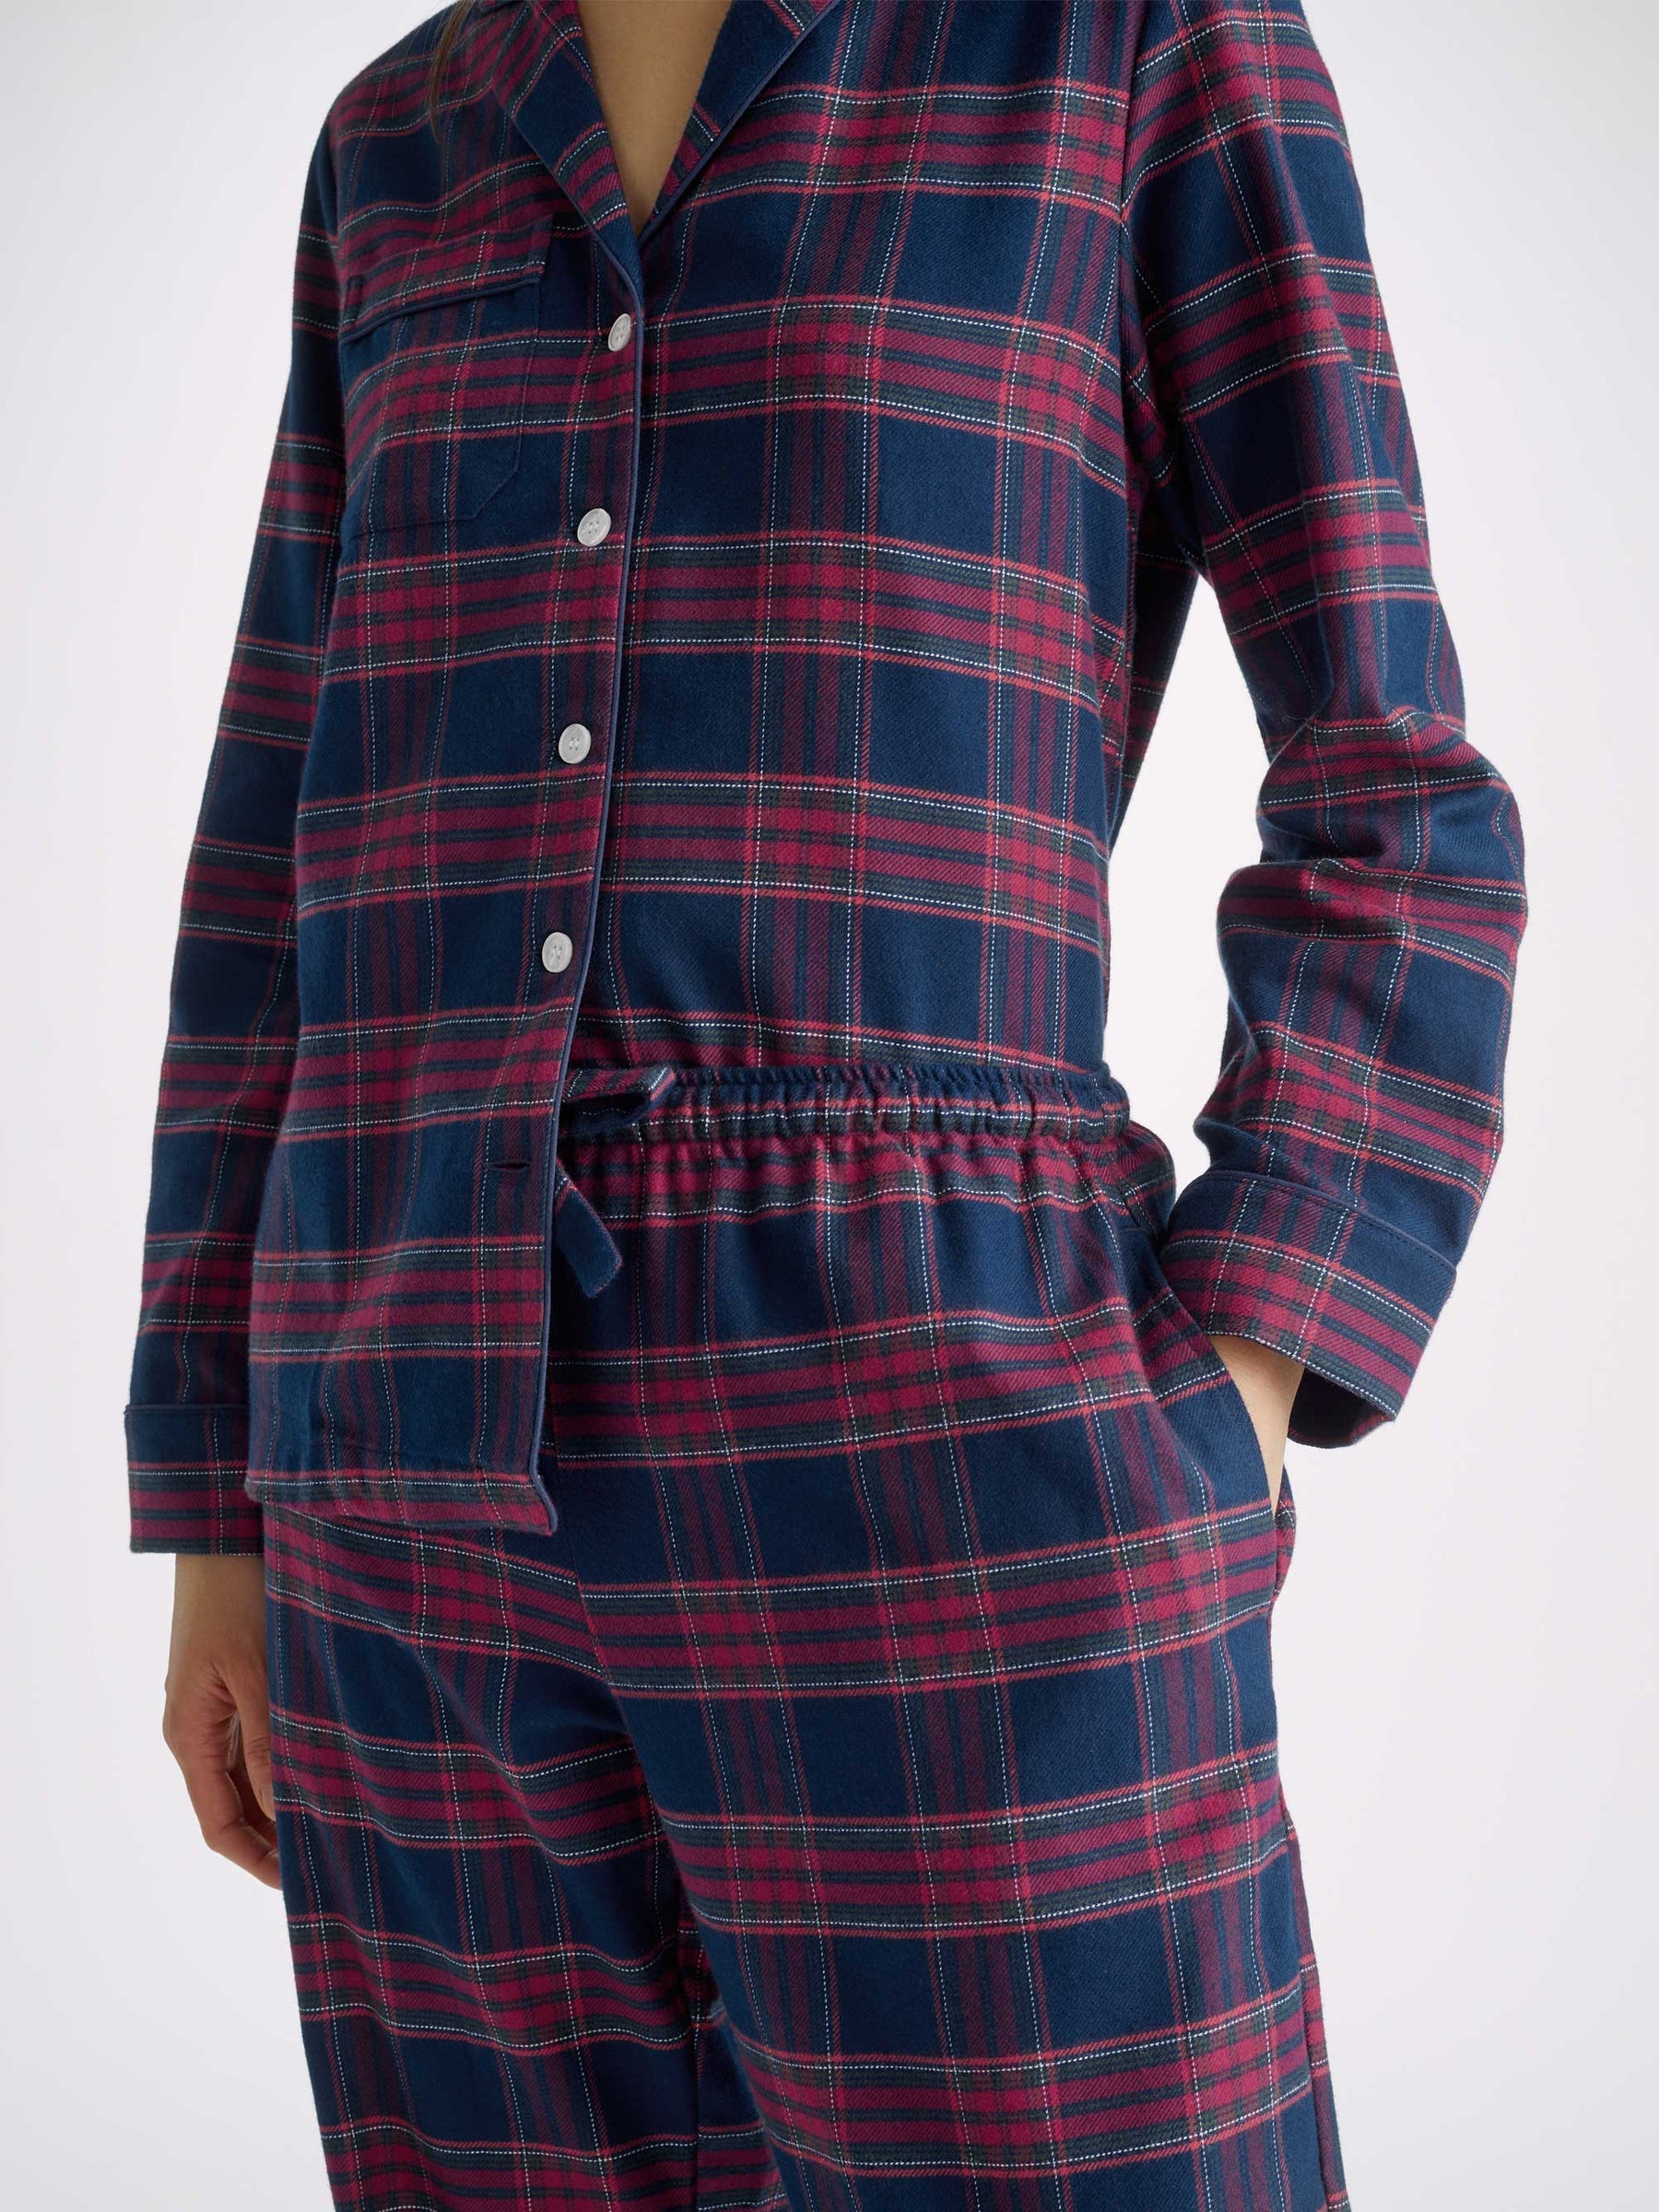 Women's Pyjamas Kelburn 36 Brushed Cotton Multi